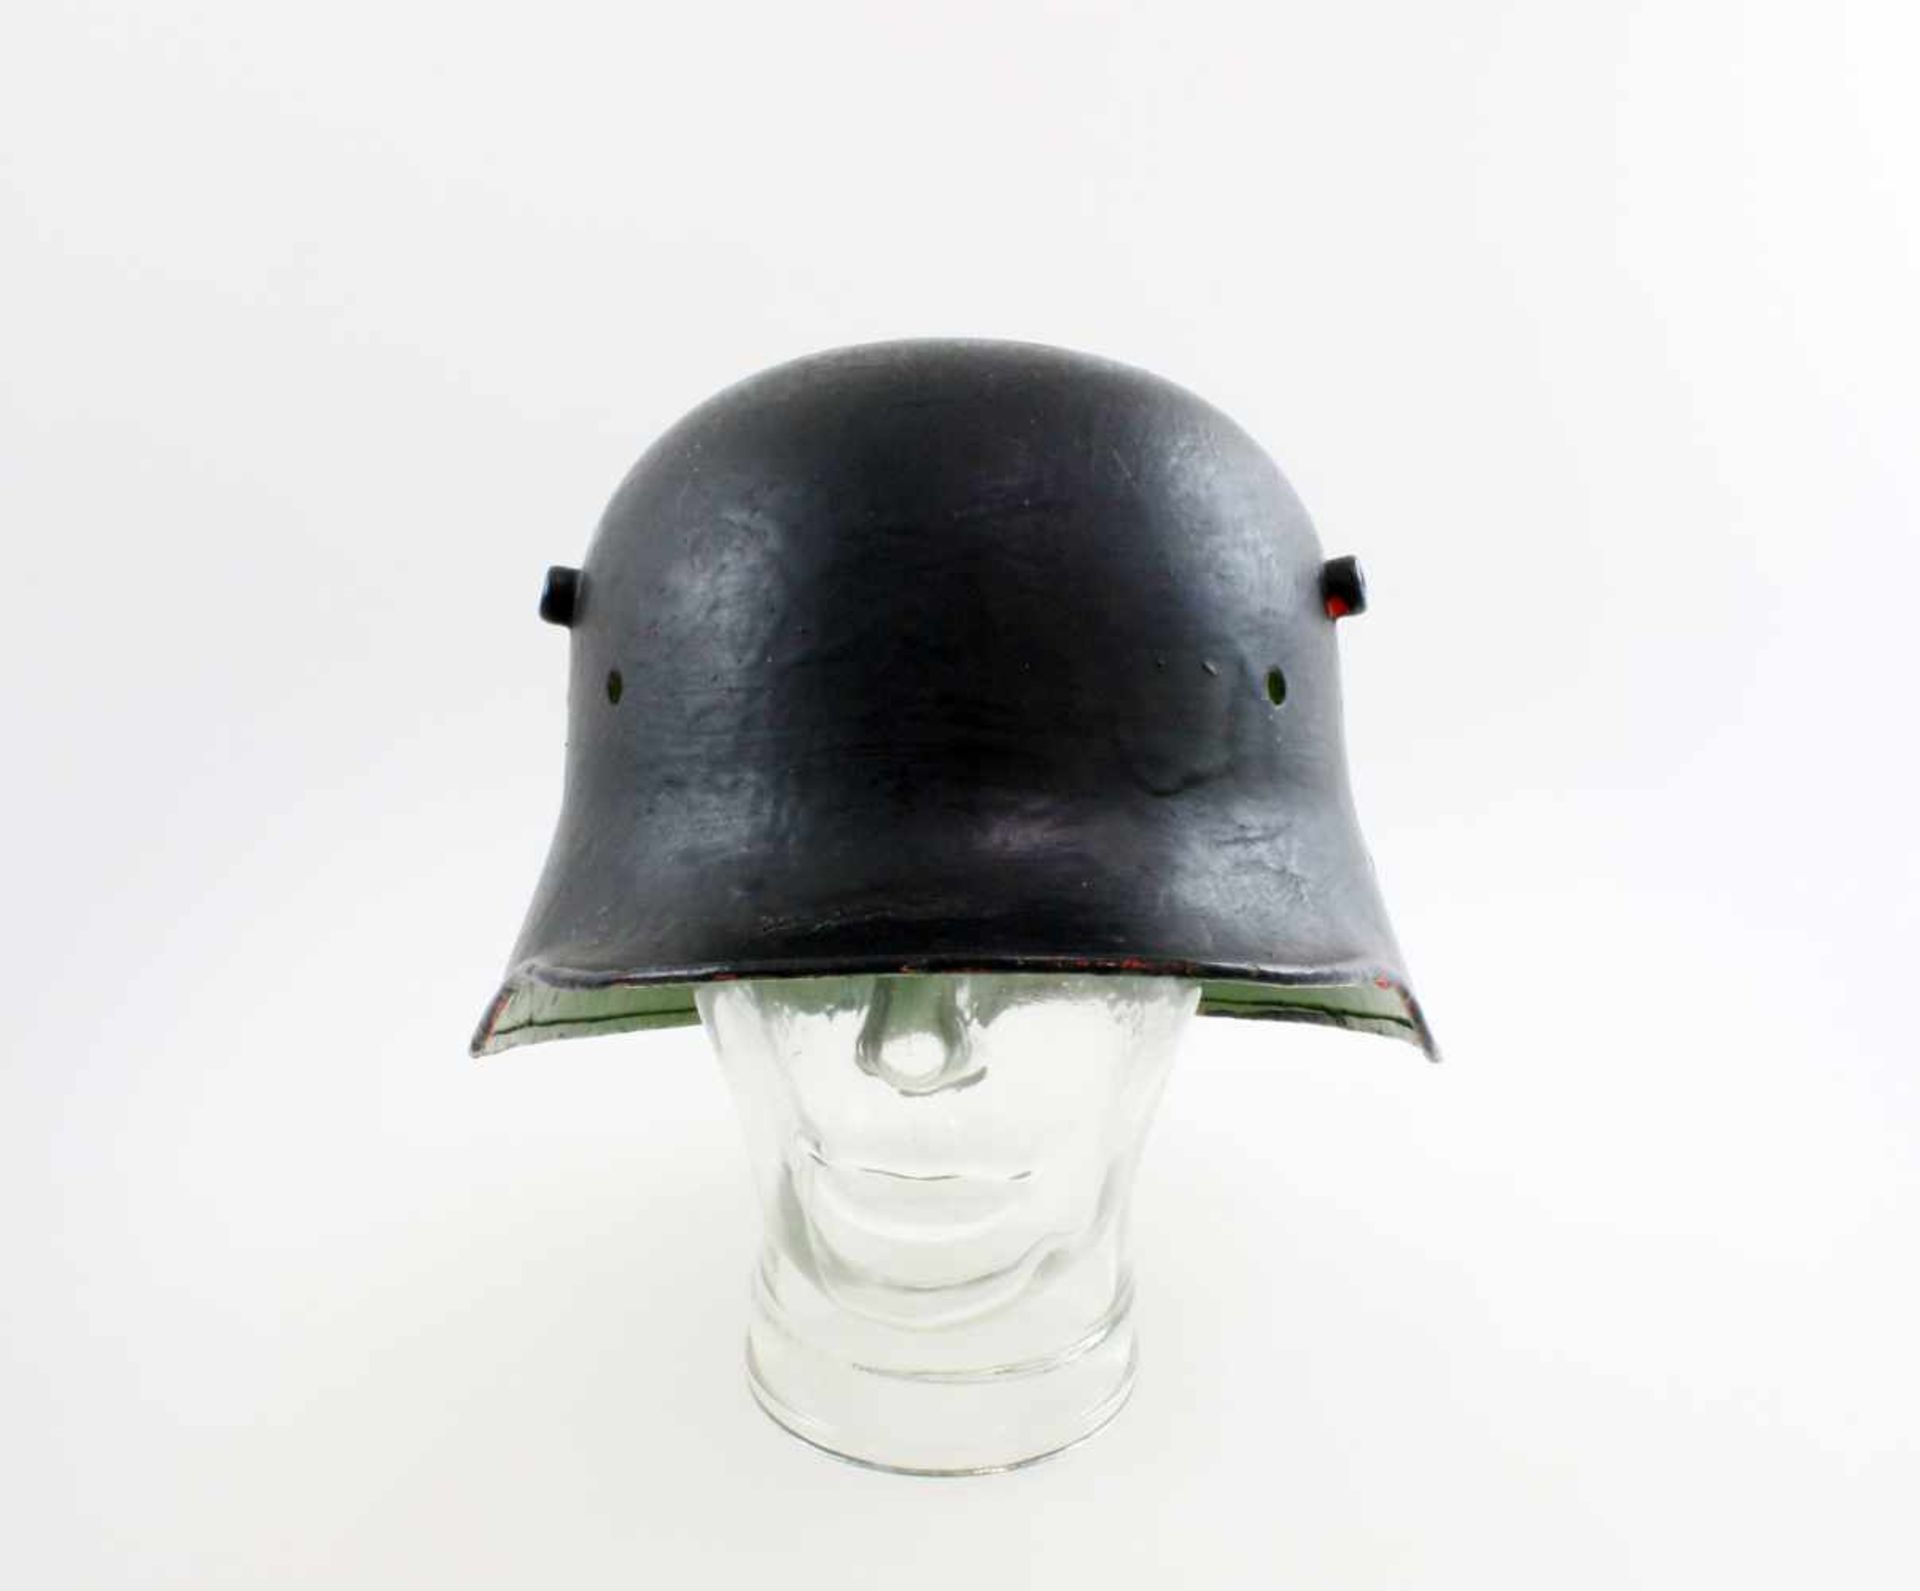 Deutsches Reich - Stahlhelm M1918 Helmkalotte ohne Innenausstattung, außen schwarz lackiert, innen - Bild 2 aus 6